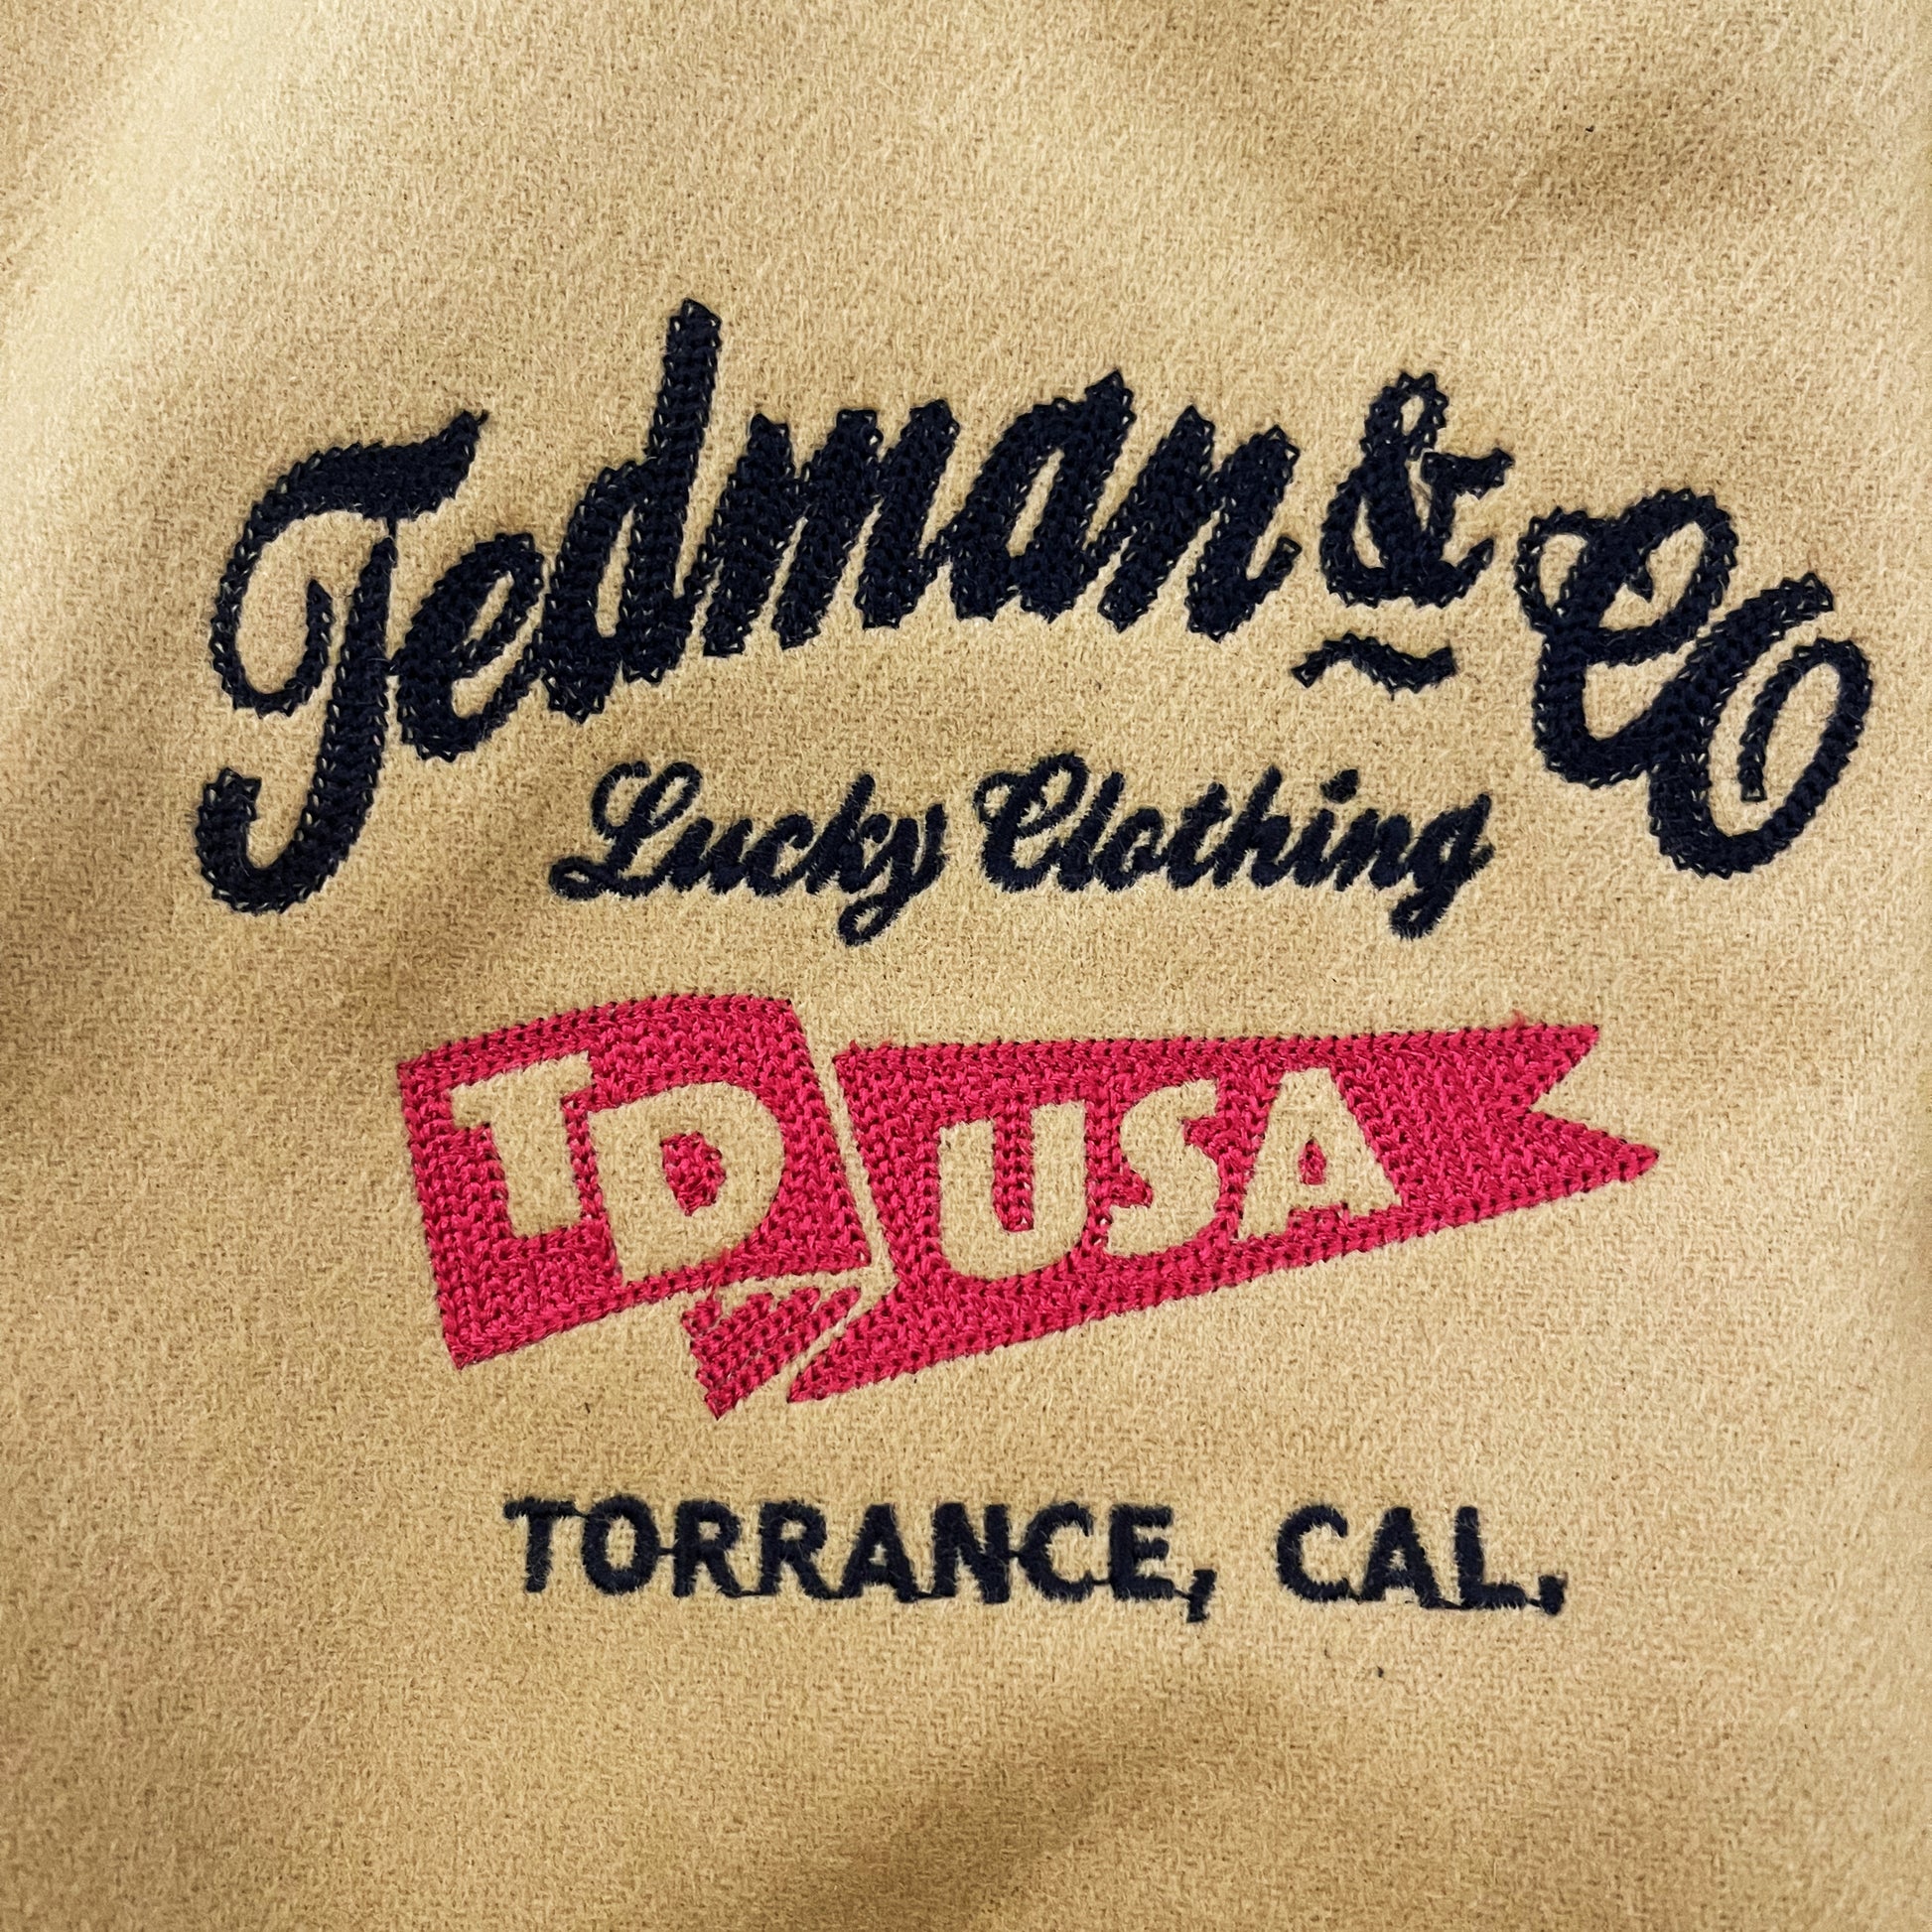 Tedman's Varsity Jacket